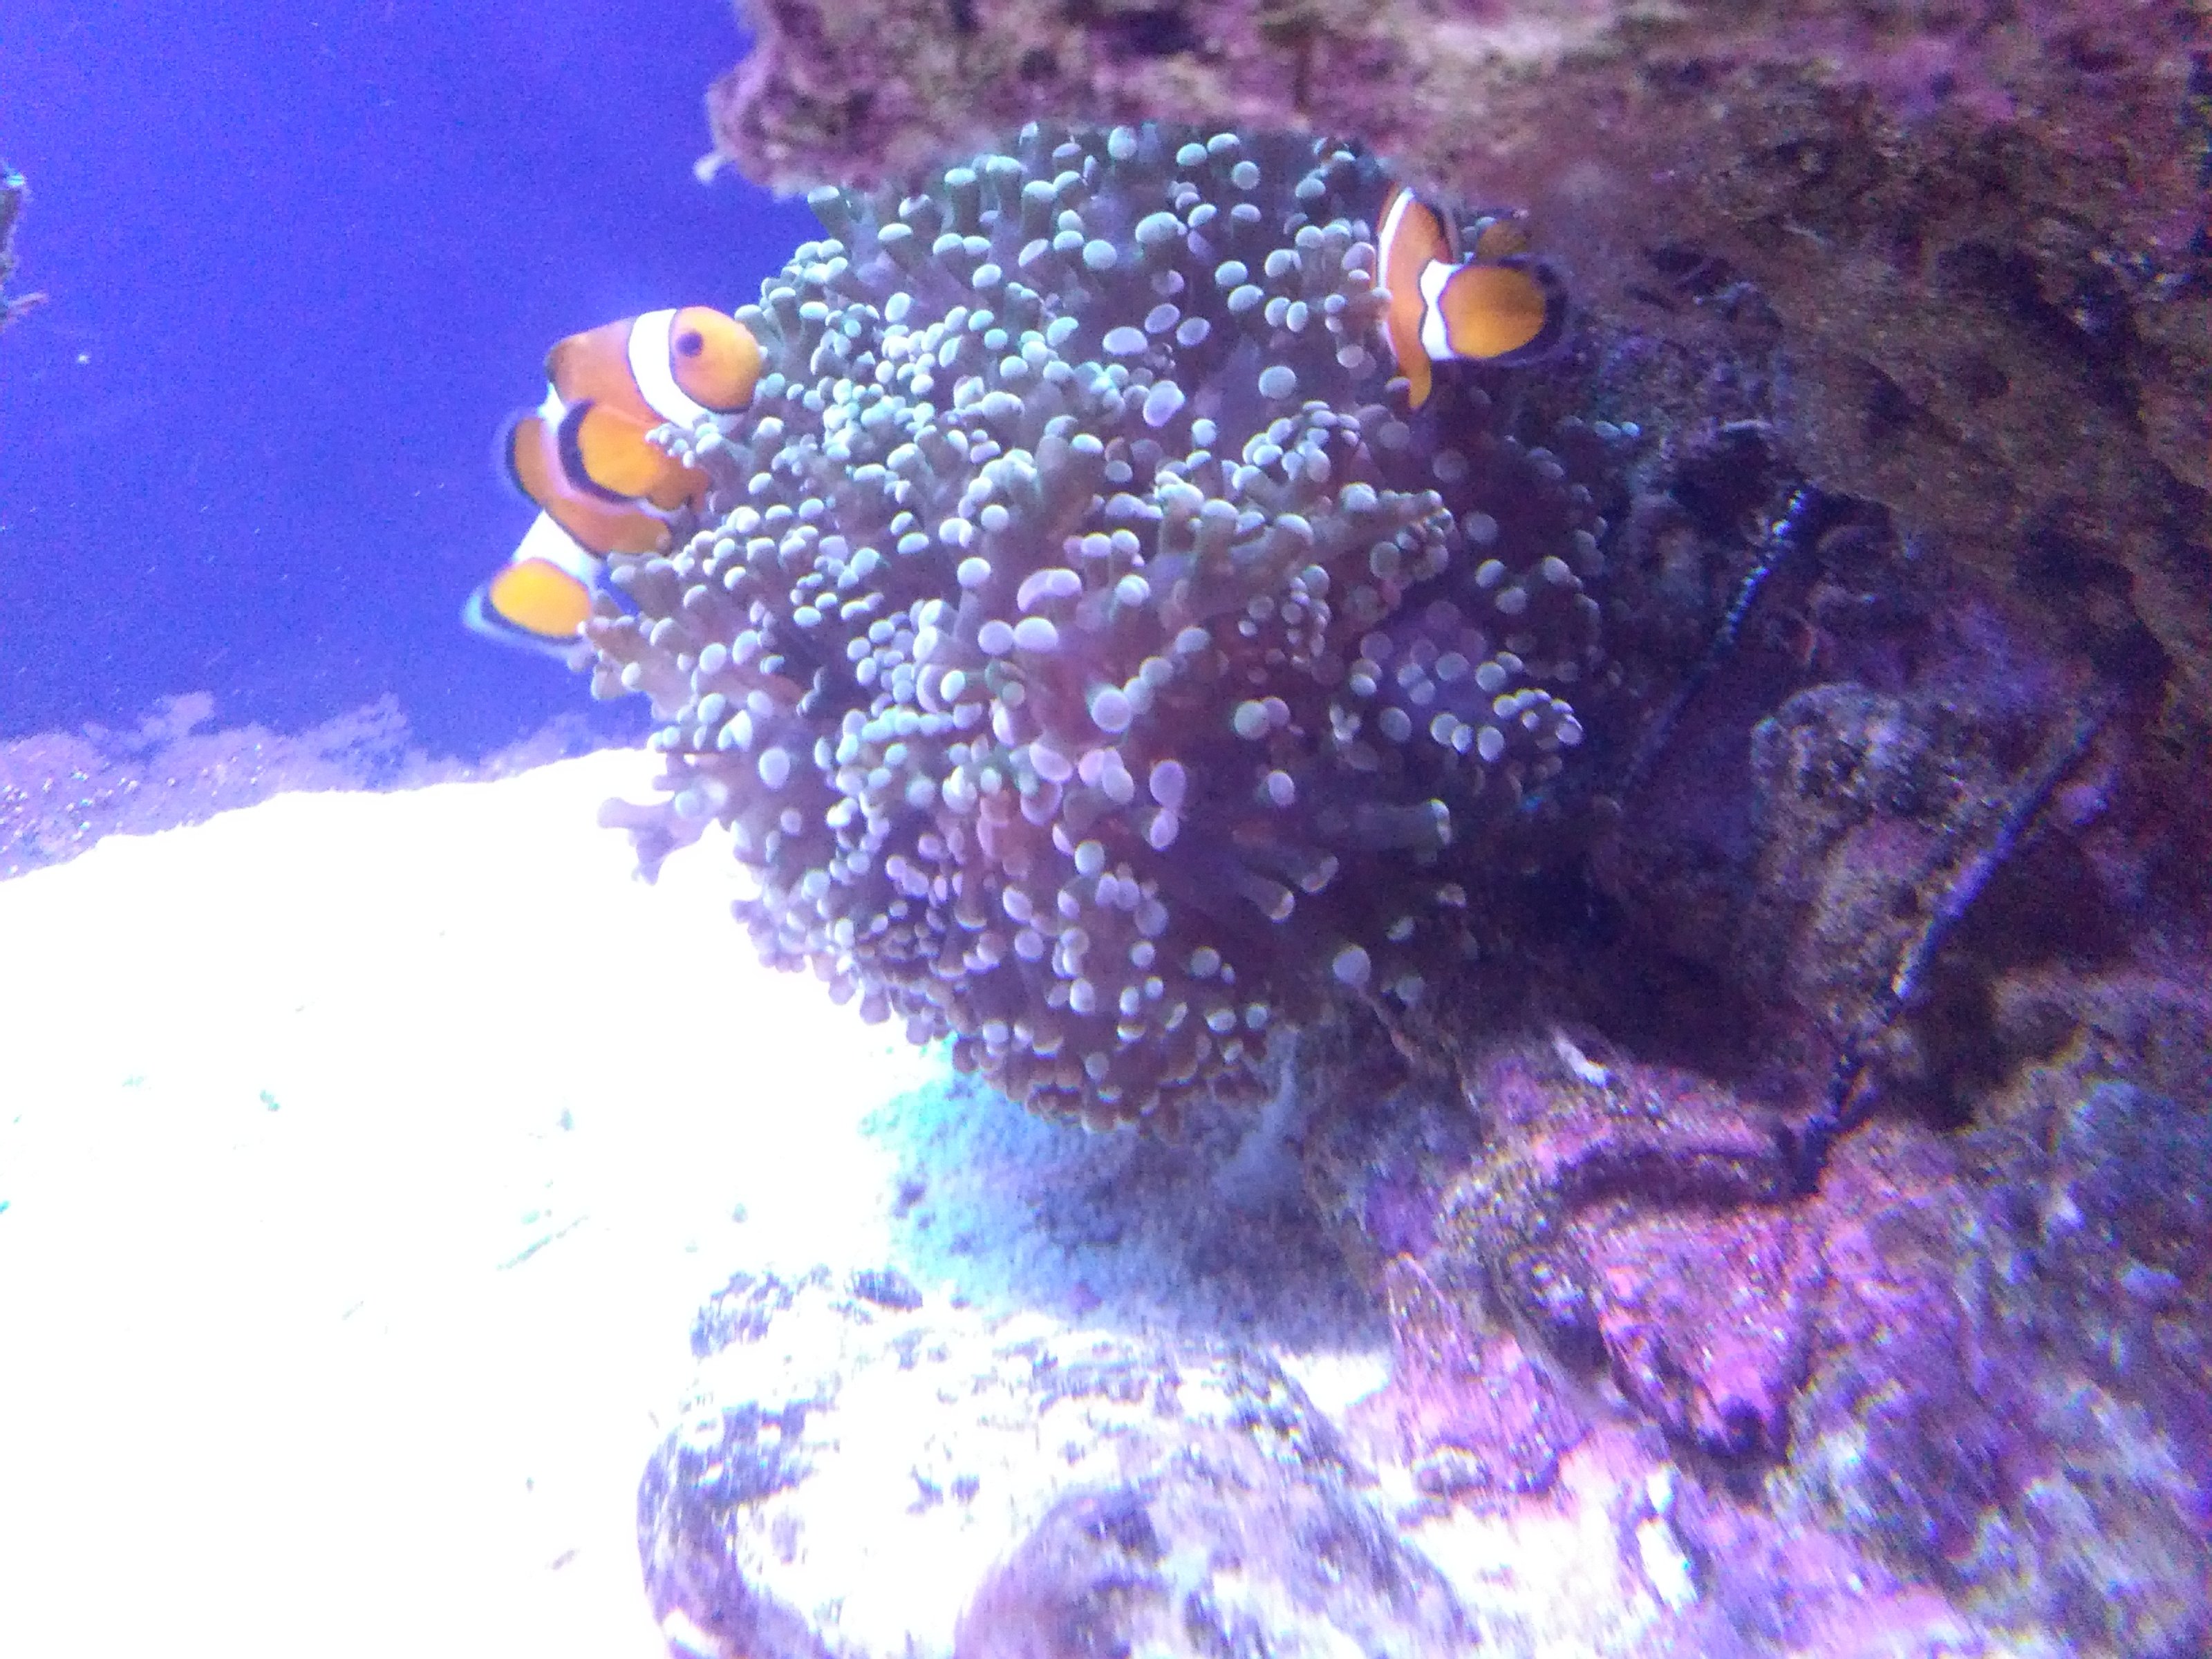 My reef